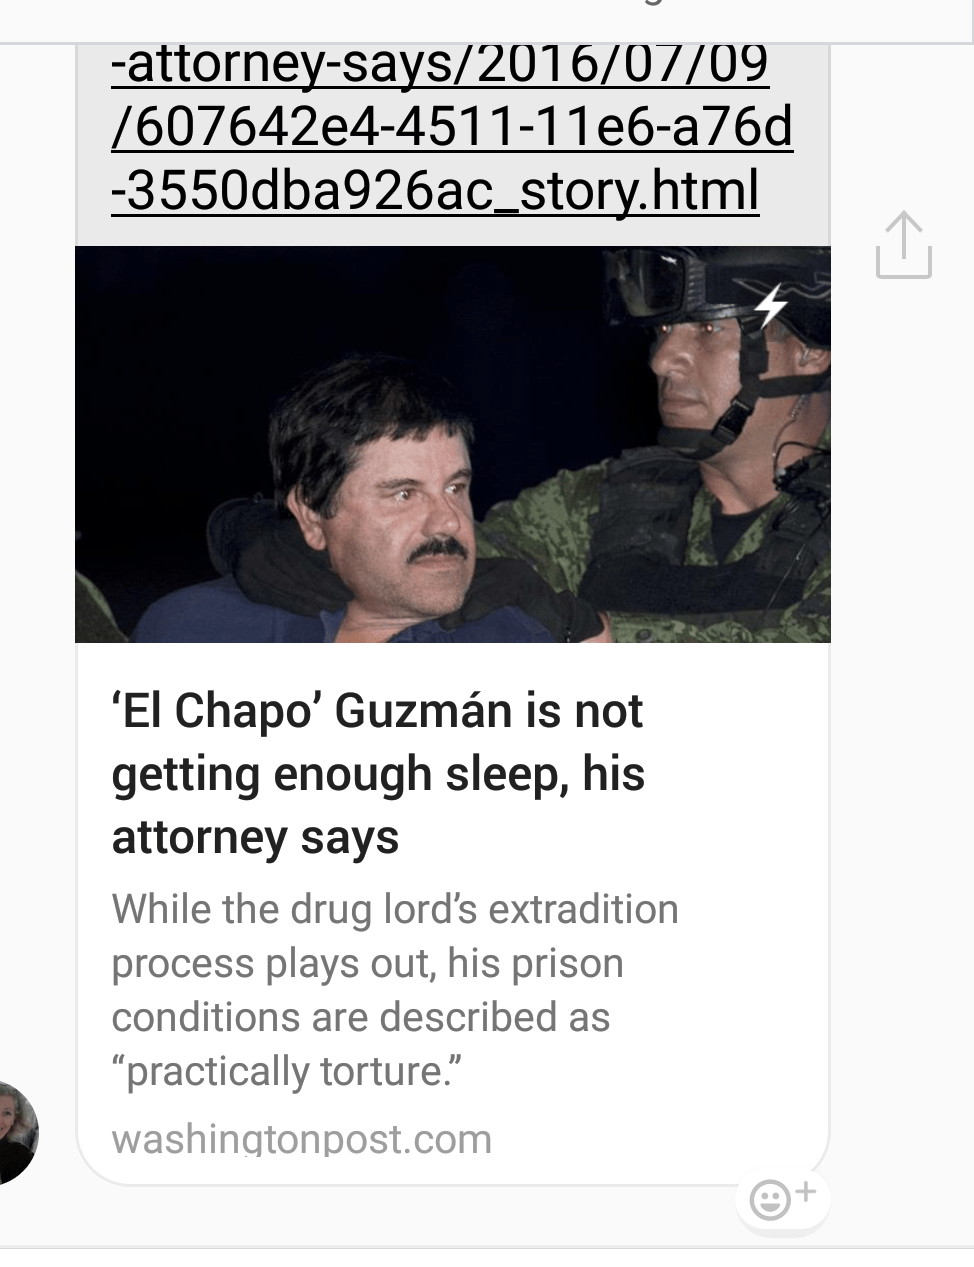 Artículo del Washington Post sobre la actividad de "El Chapo" en la cárcel de Sinaloa